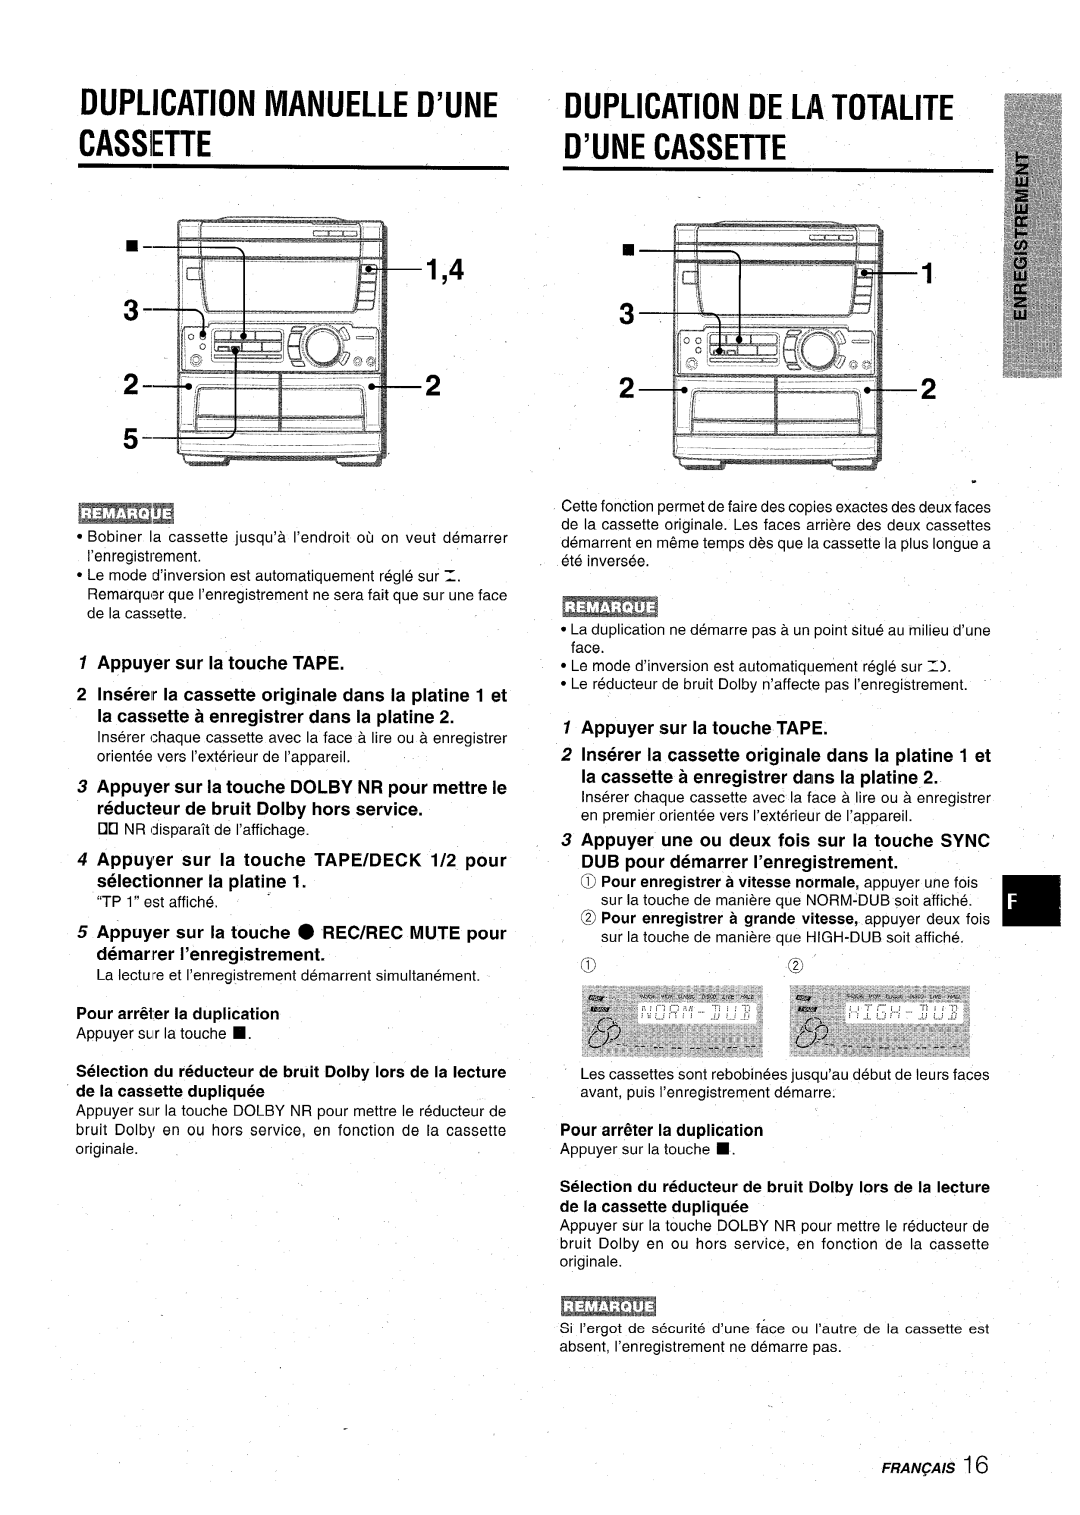 Aiwa CX-NA71 manual Cassiette, Duplication Manuelle D’Une Dup .Ication De La Totalite, D’Ui E Cassette 